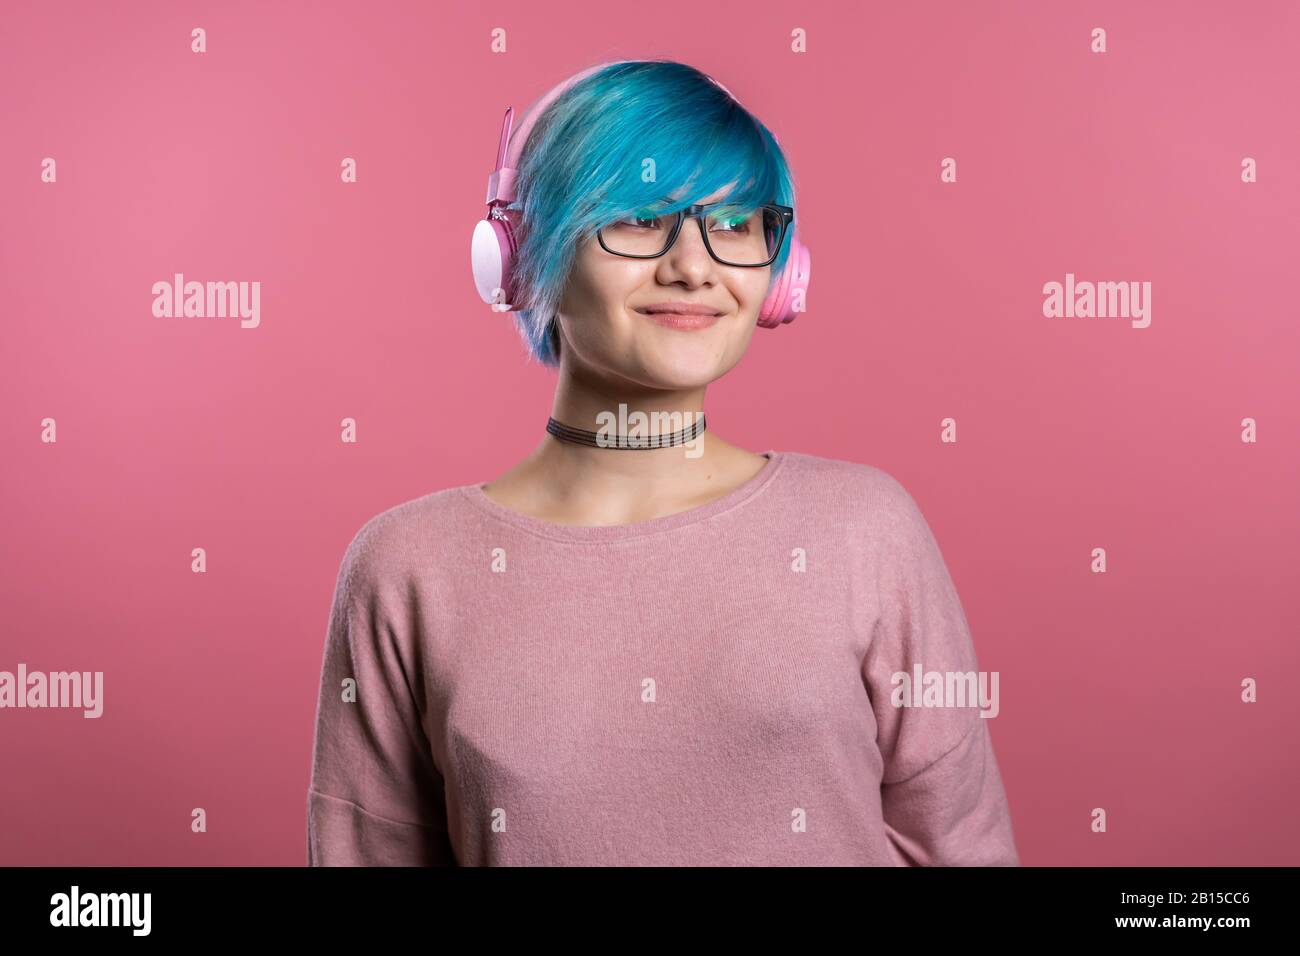 Hübsches junges Mädchen mit blauem Haar, das Spaß hat, lächelt und im Studio mit rosafarbenen Kopfhörern auf farbenfrohem Hintergrund tanzt. Musik, Tanz, Radio Konzept. Stockfoto